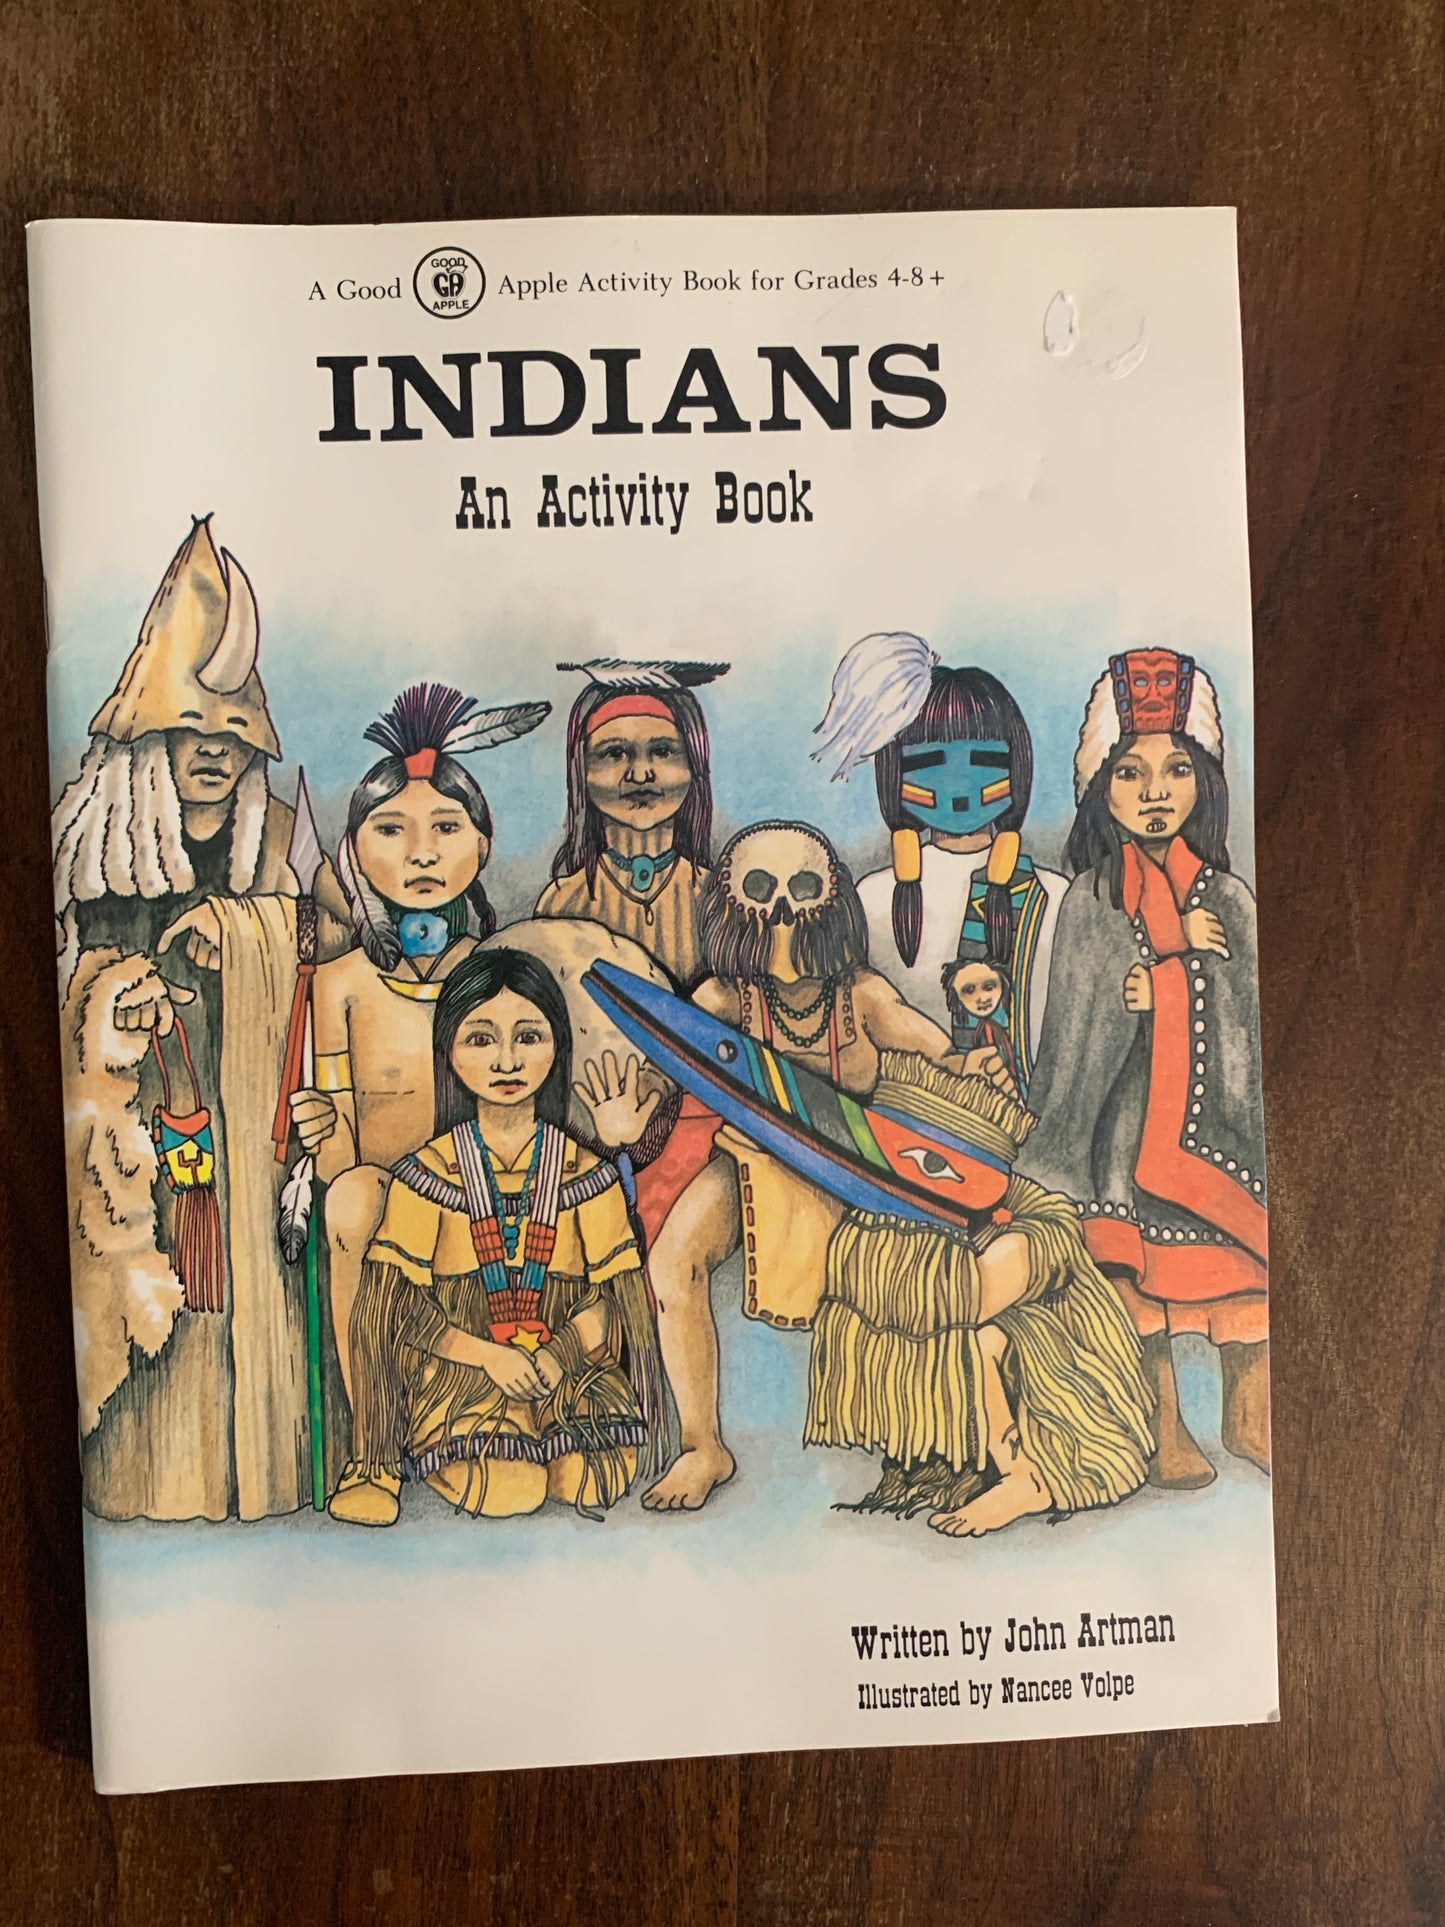 Indians: An Activity Book by John Artman